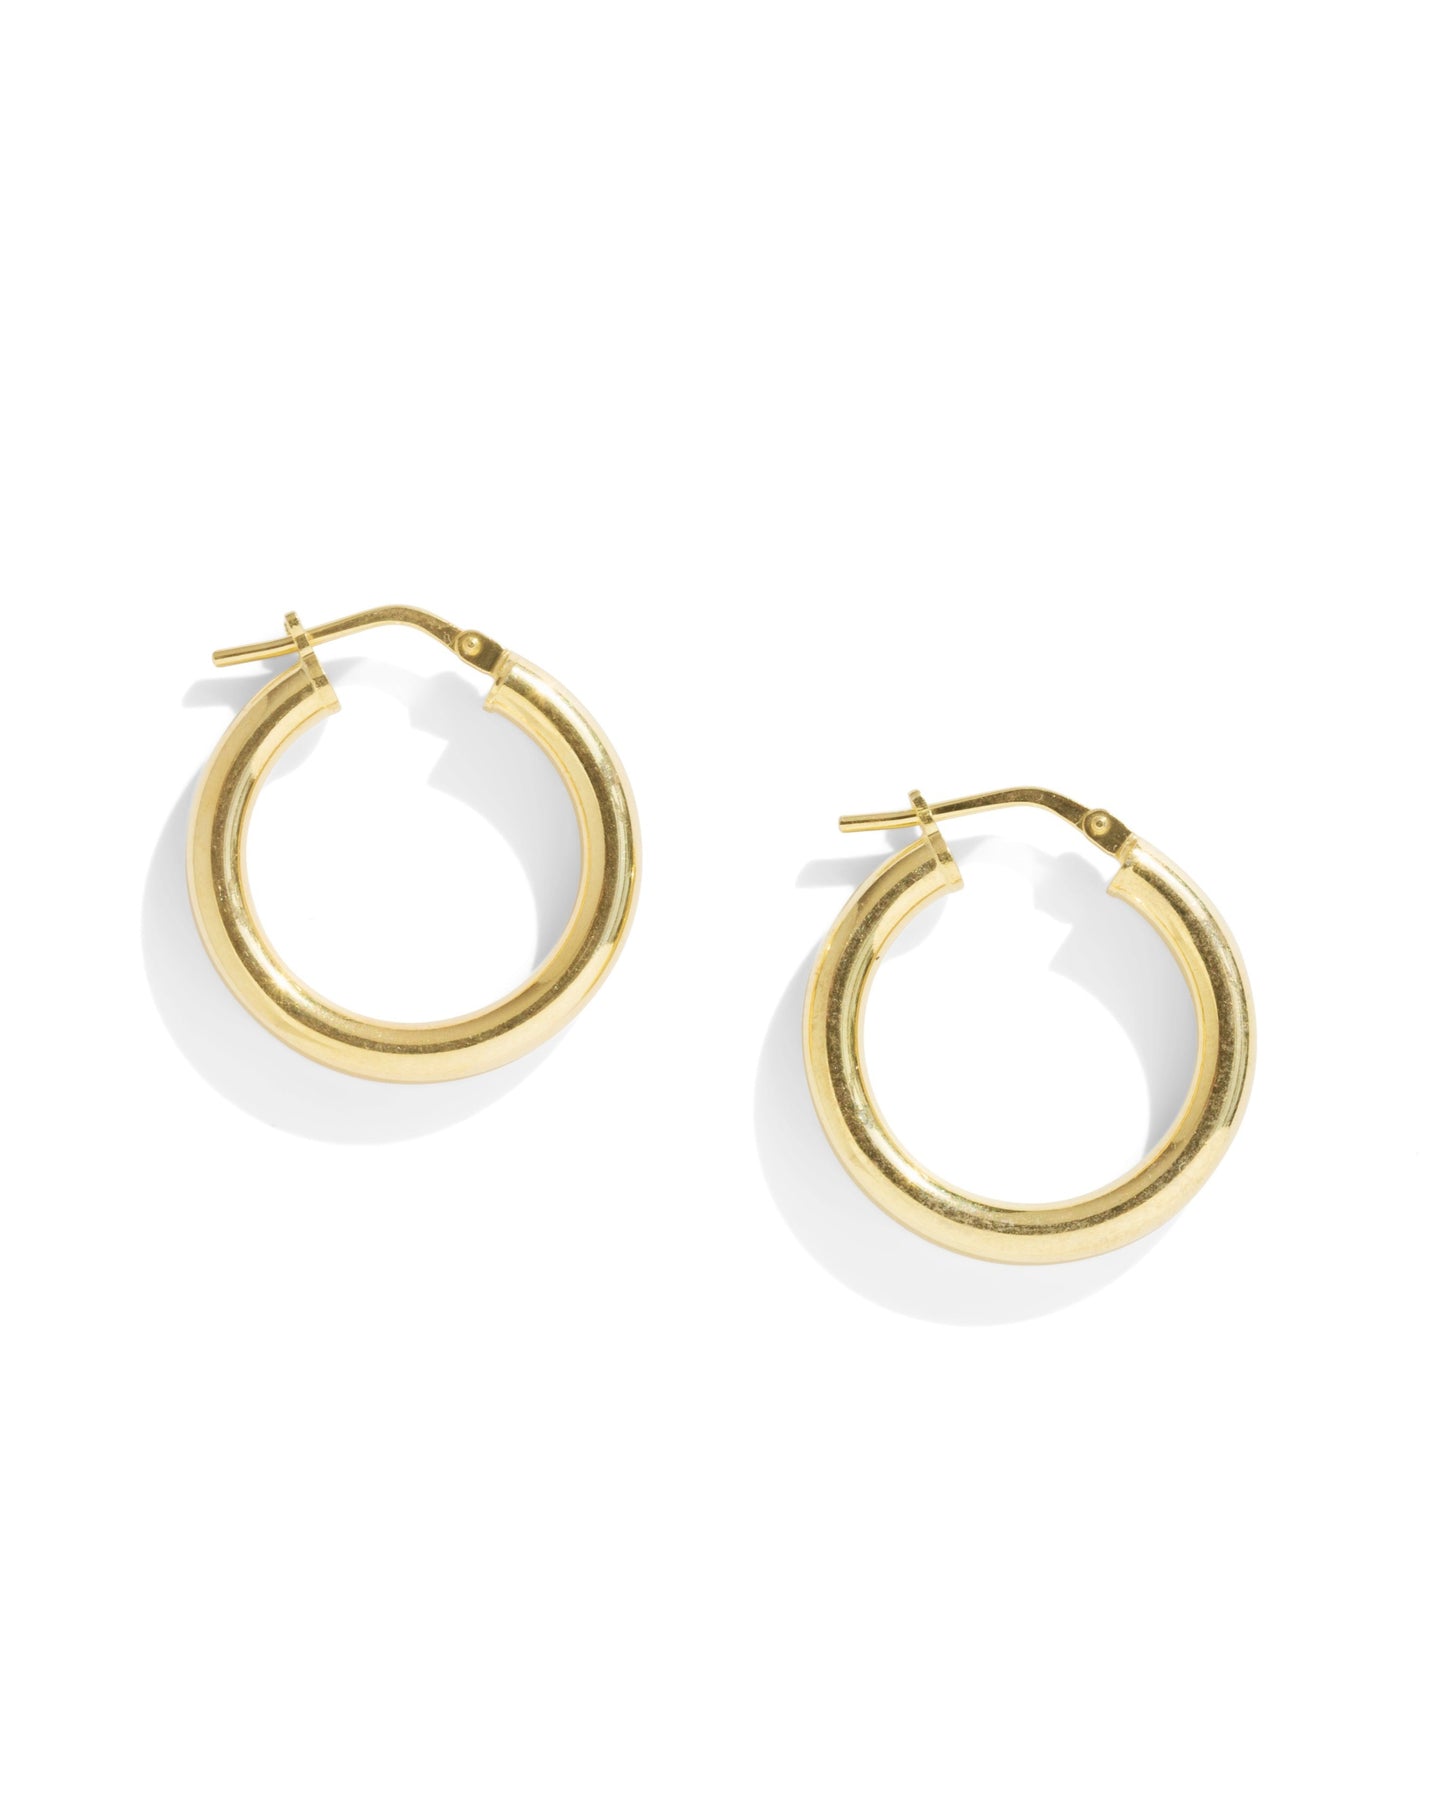 Gold Hoop Earrings on White